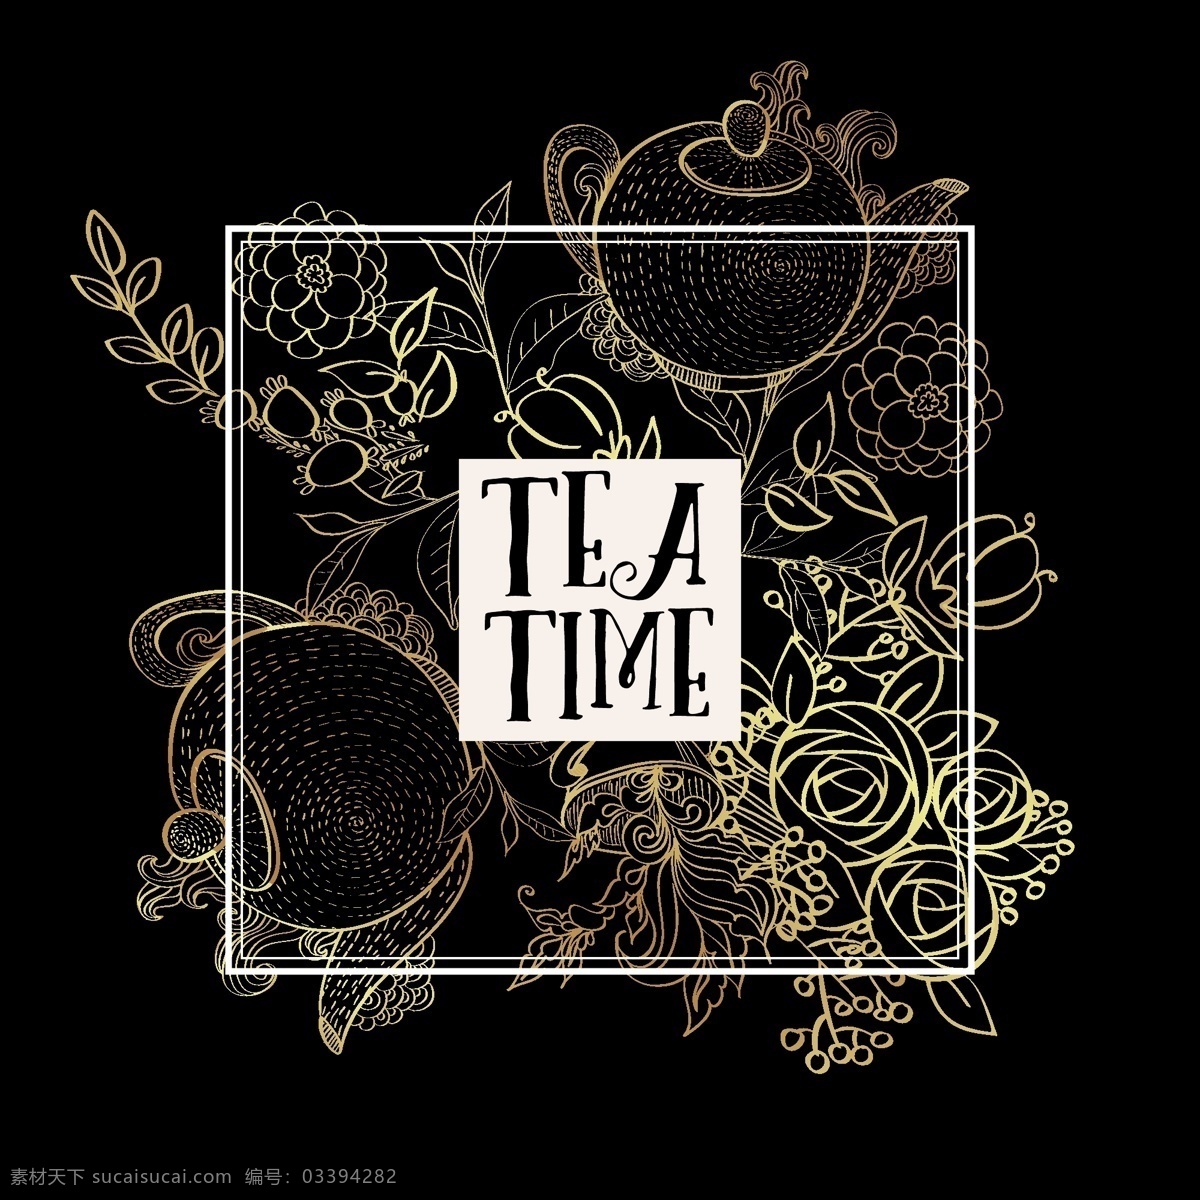 喝茶 时间 新潮 海报 矢量 茶 饮料 杯子 菜单 热 葡萄酒 茶壶 刻字 报价 早餐 咖啡